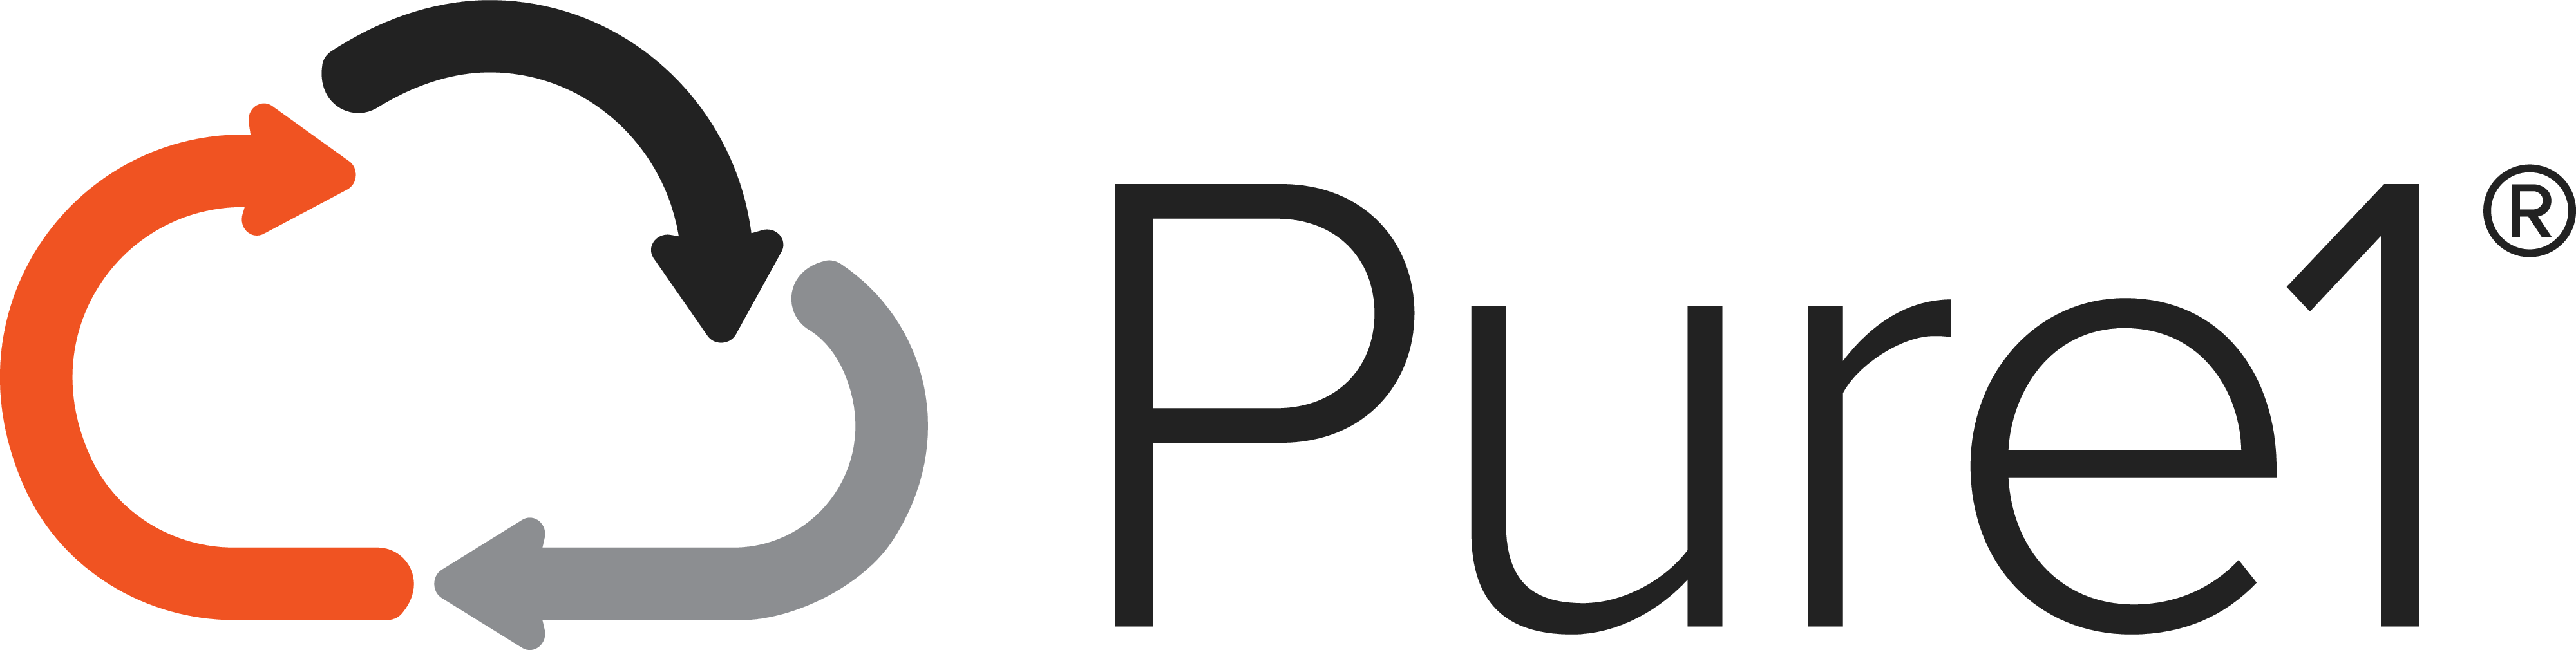 ps-pure1-digital-fc-4000x1010-d3d86e5.png